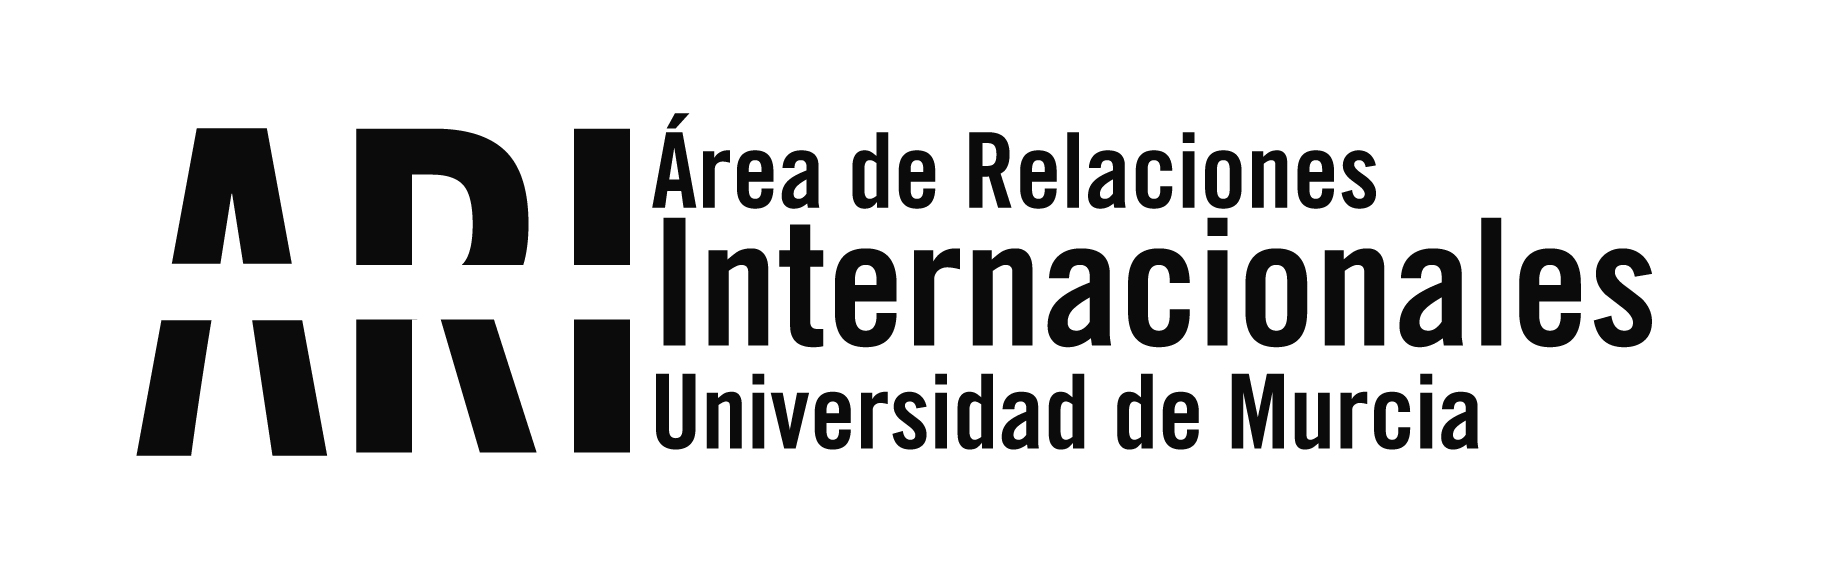 La UMU participa en la Conferencia Anual de NAFSA, el evento más importante del sector de la internacionalización - Área de Relaciones Internacionales